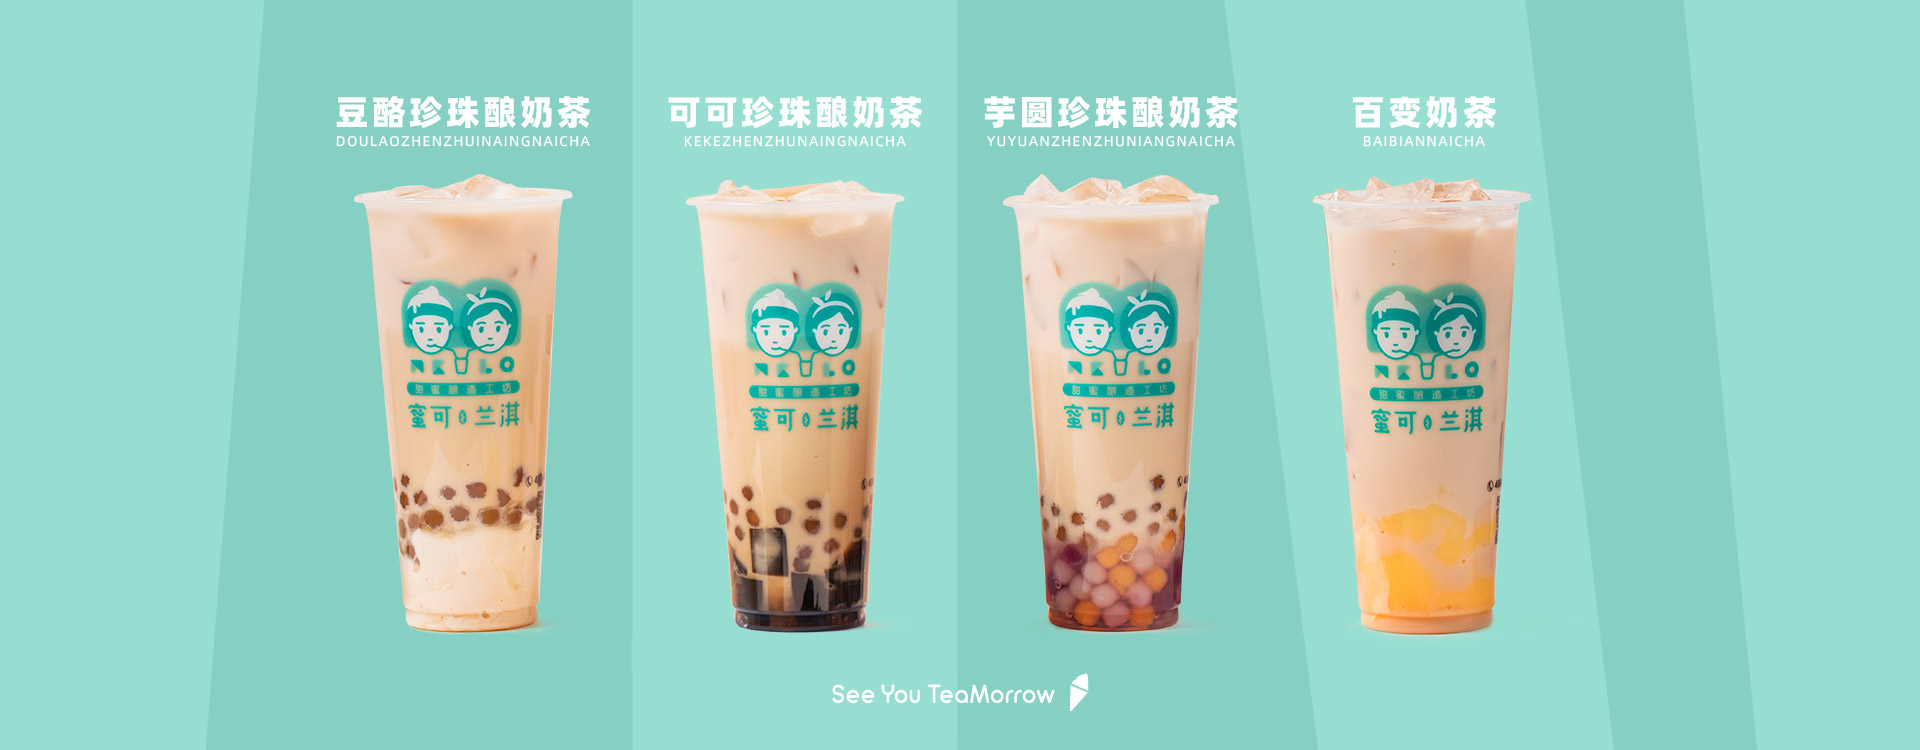 奶茶店连锁加盟品牌